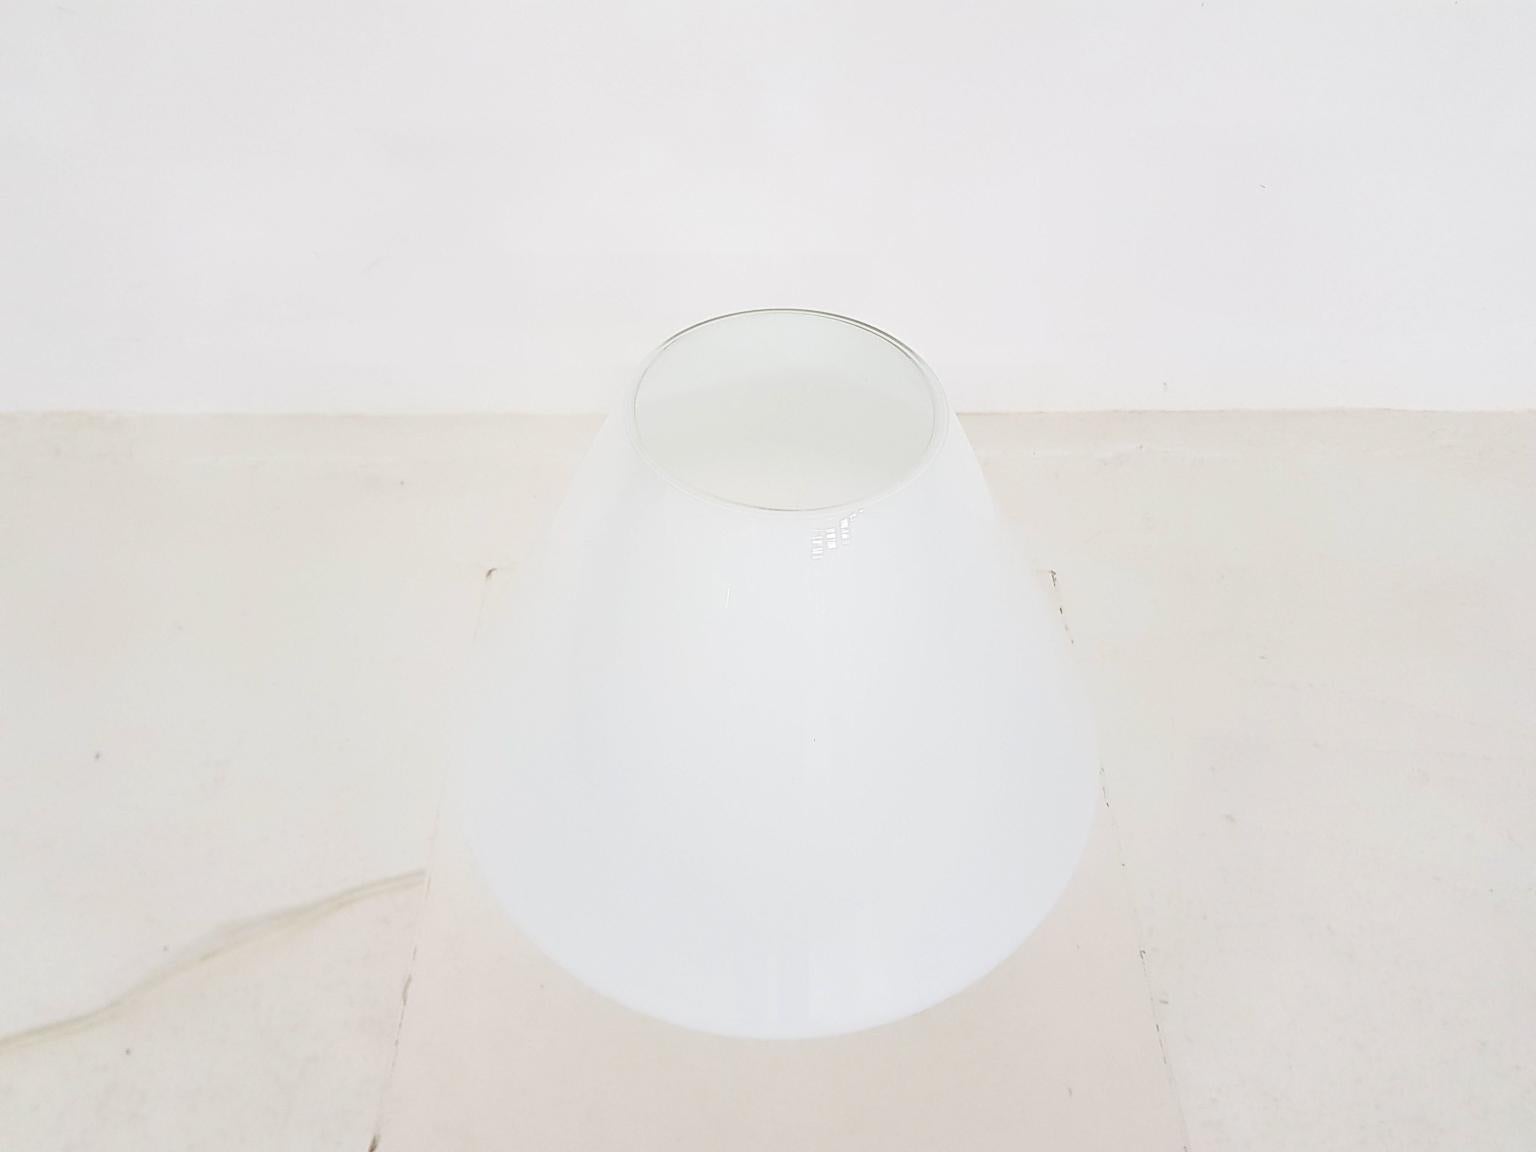 European Vistosi and Venini Style Opaline Glass Mushroom Table or Floor Light, 1960s